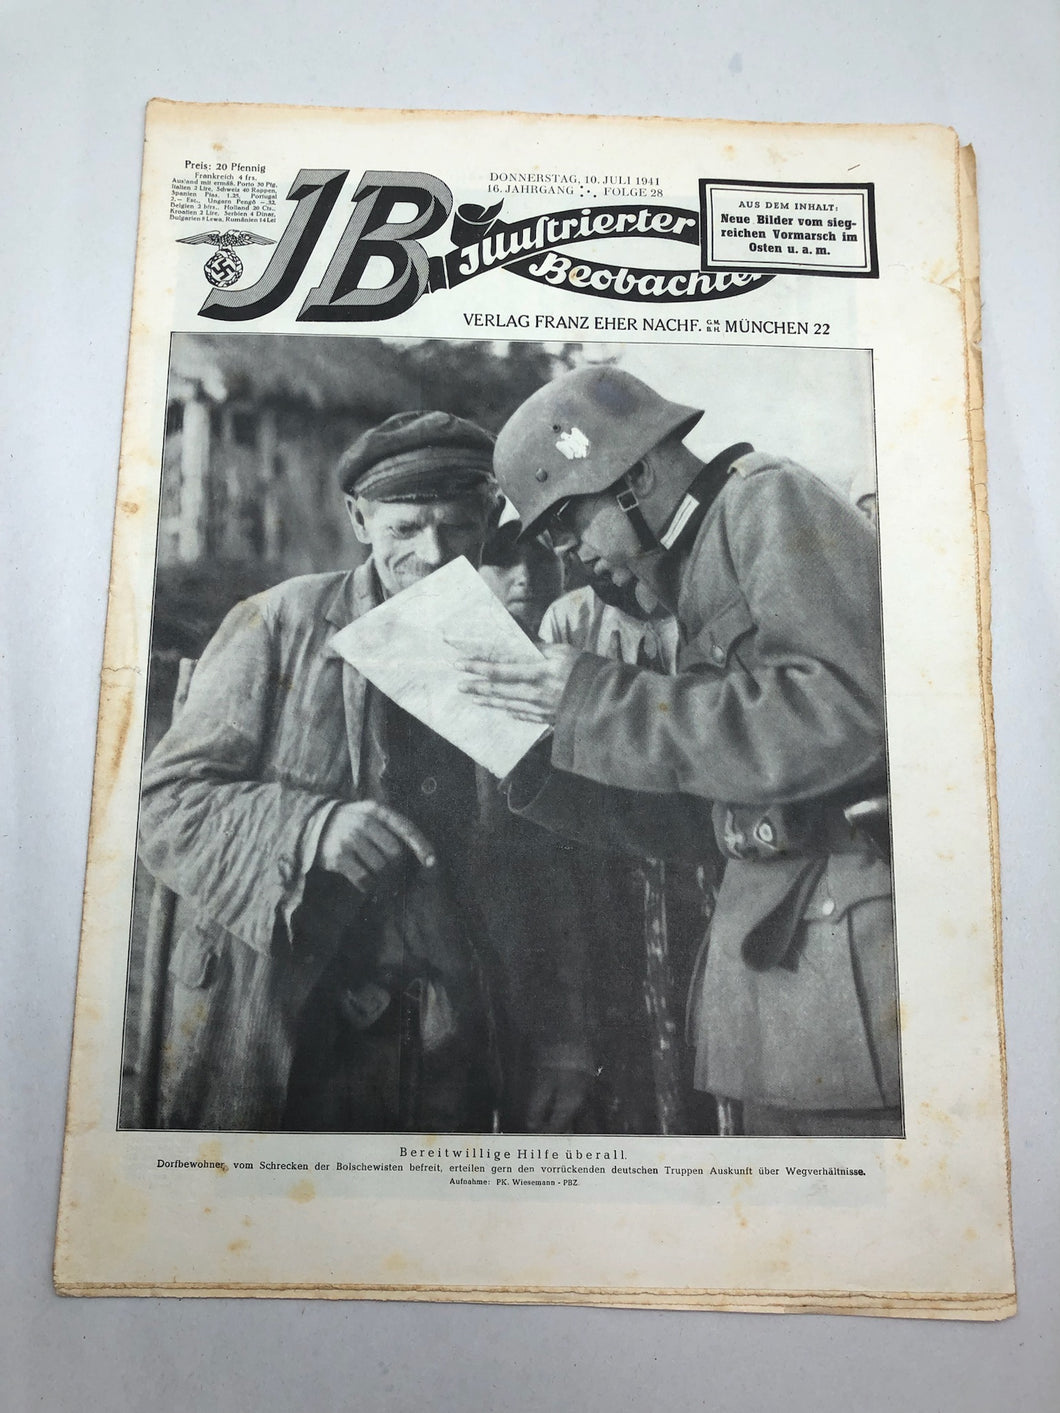 JB Juustrierter Beobachter NSDAP Magazine Original WW2 German - 10 July 1941